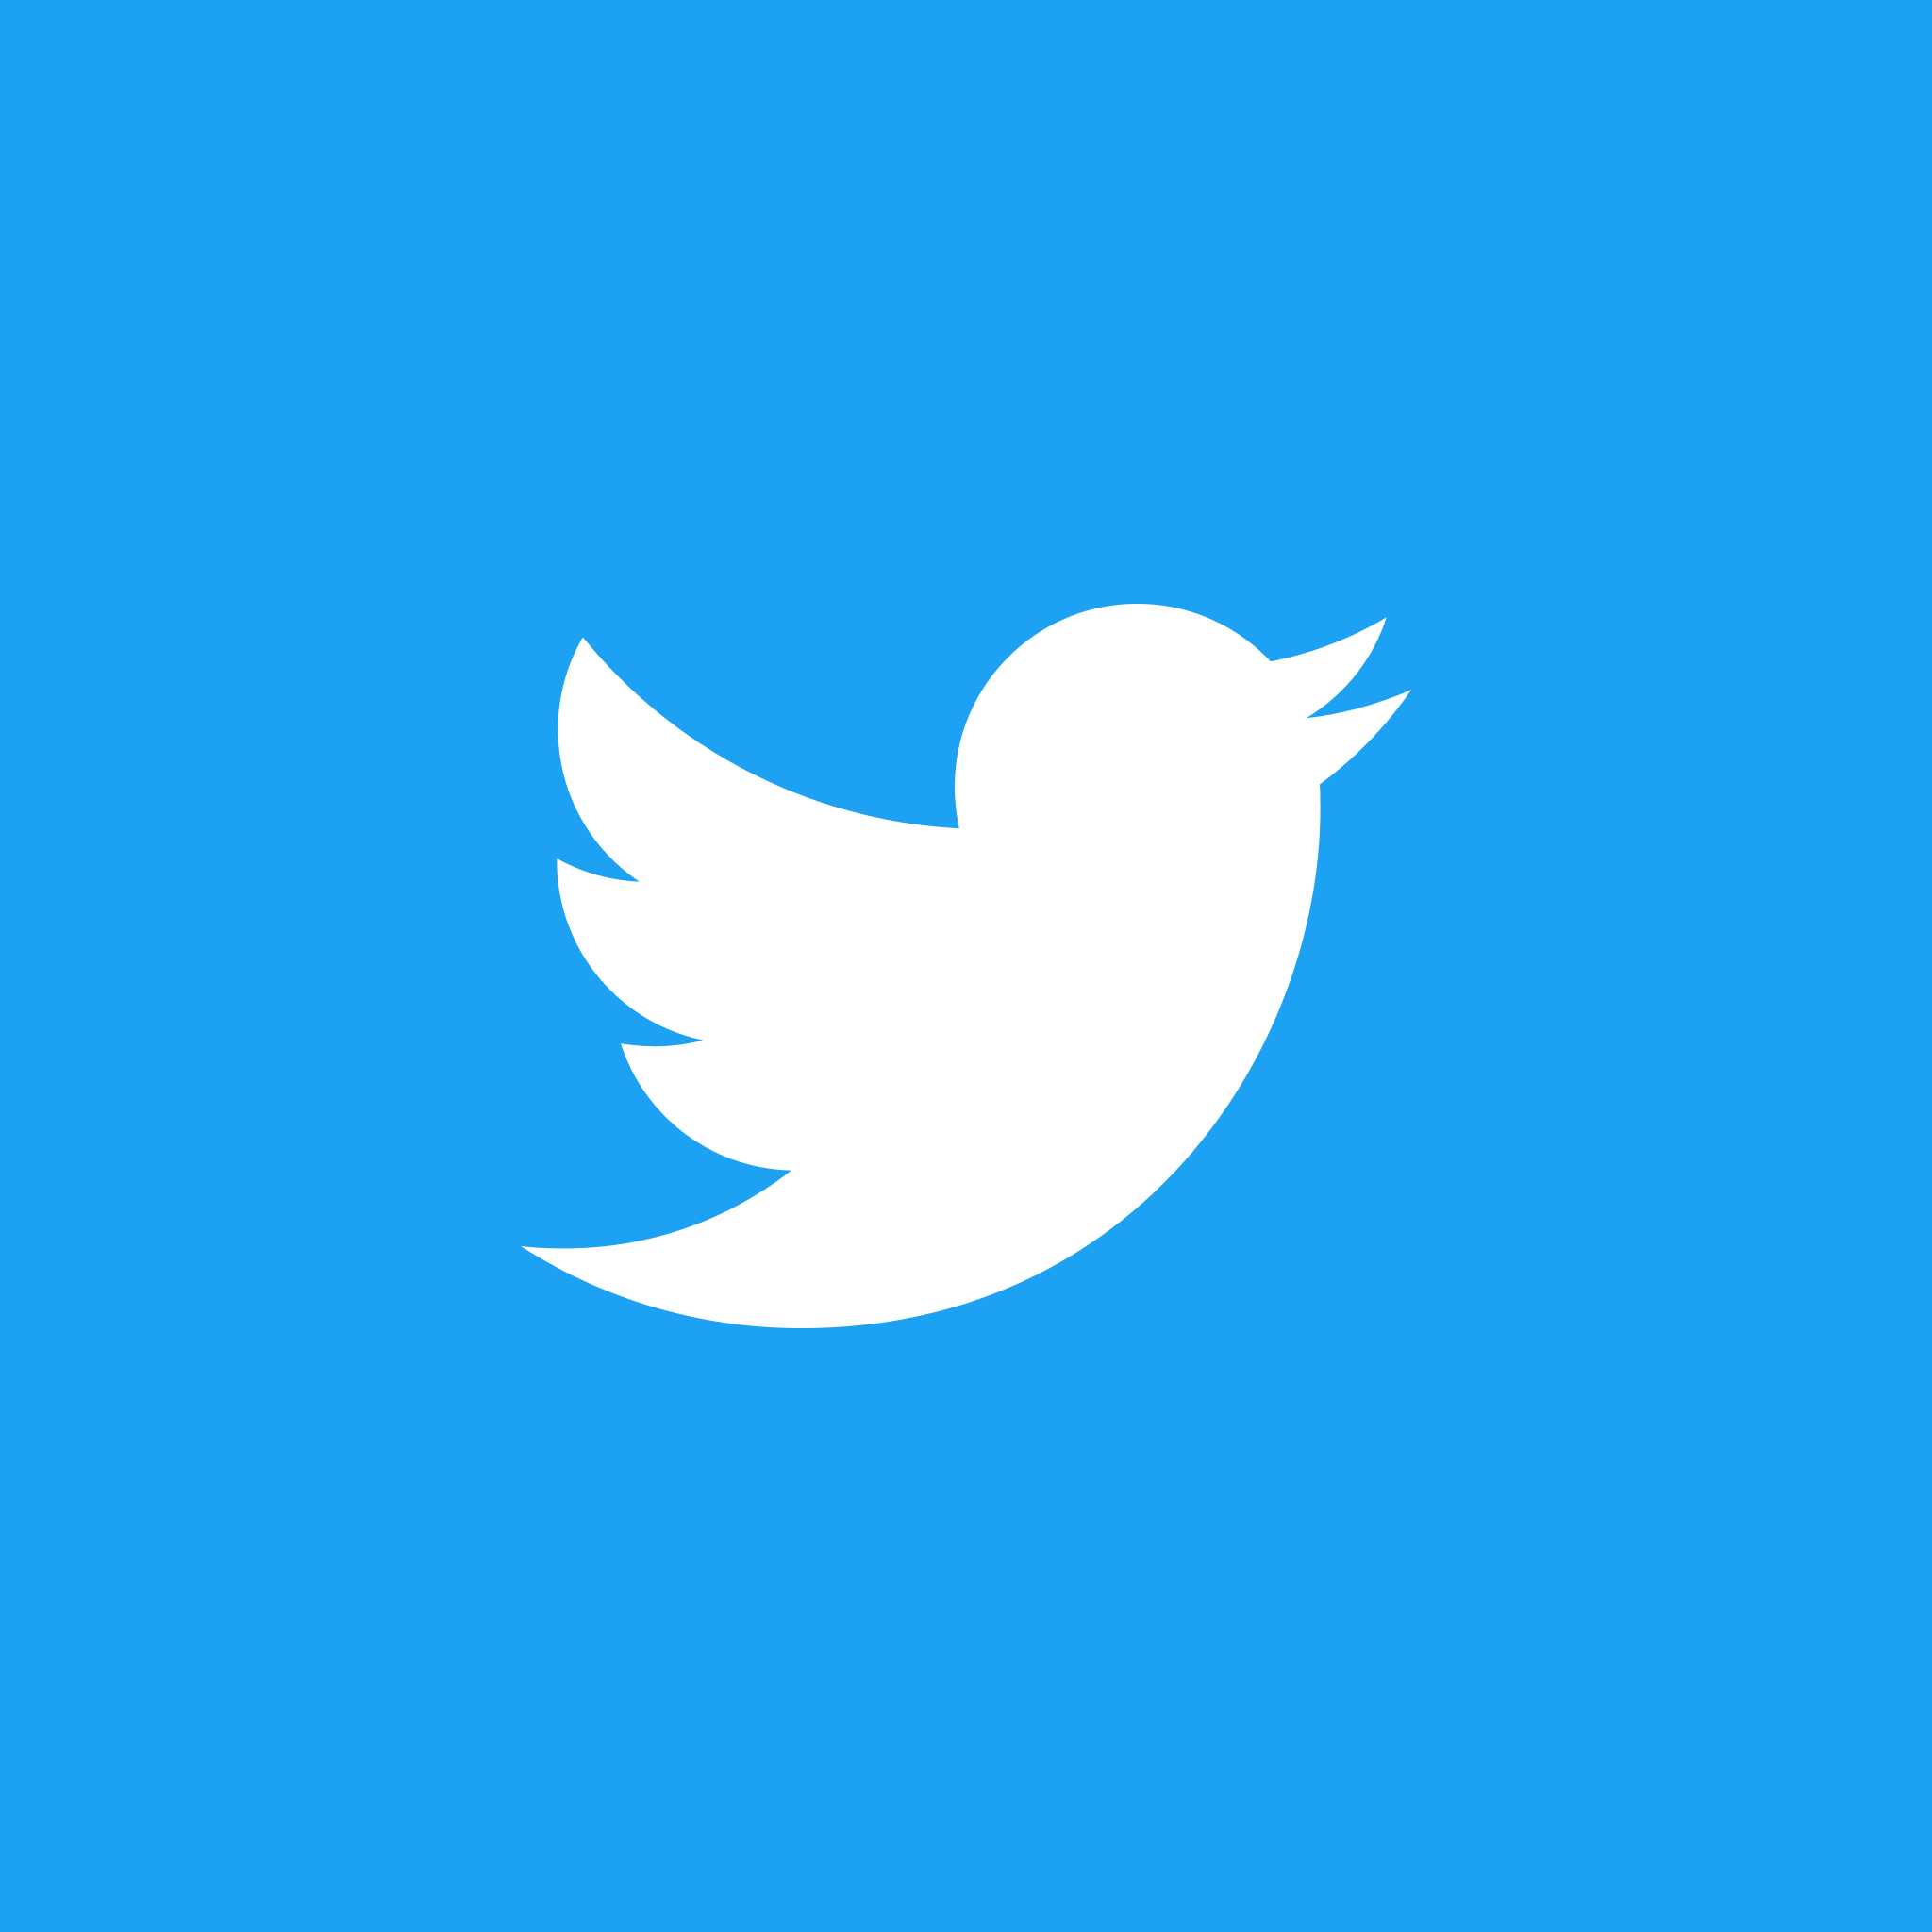 TwitterアイコンをXから元の青い鳥に戻す方法！の画像1枚目